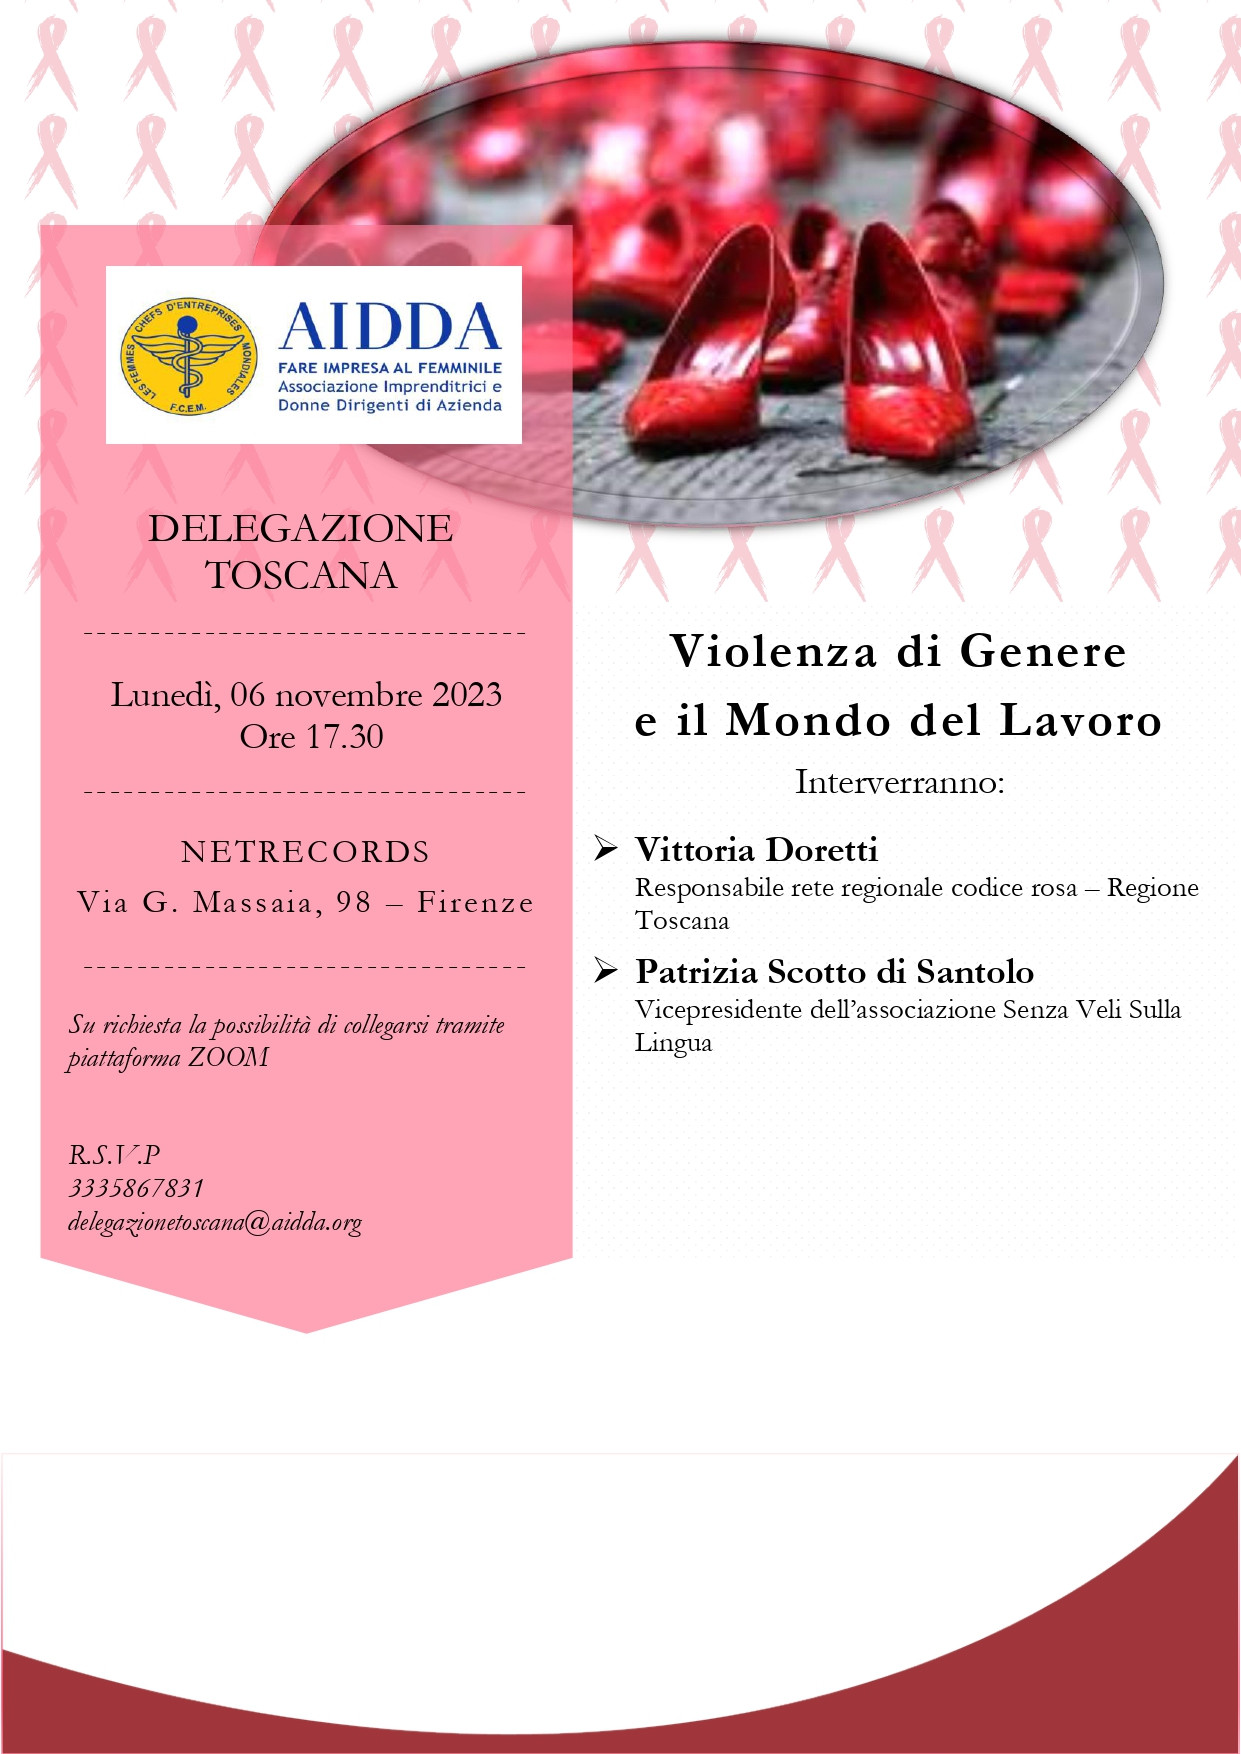 AIDDA PVA_Incontro 06-11-2023.jpg